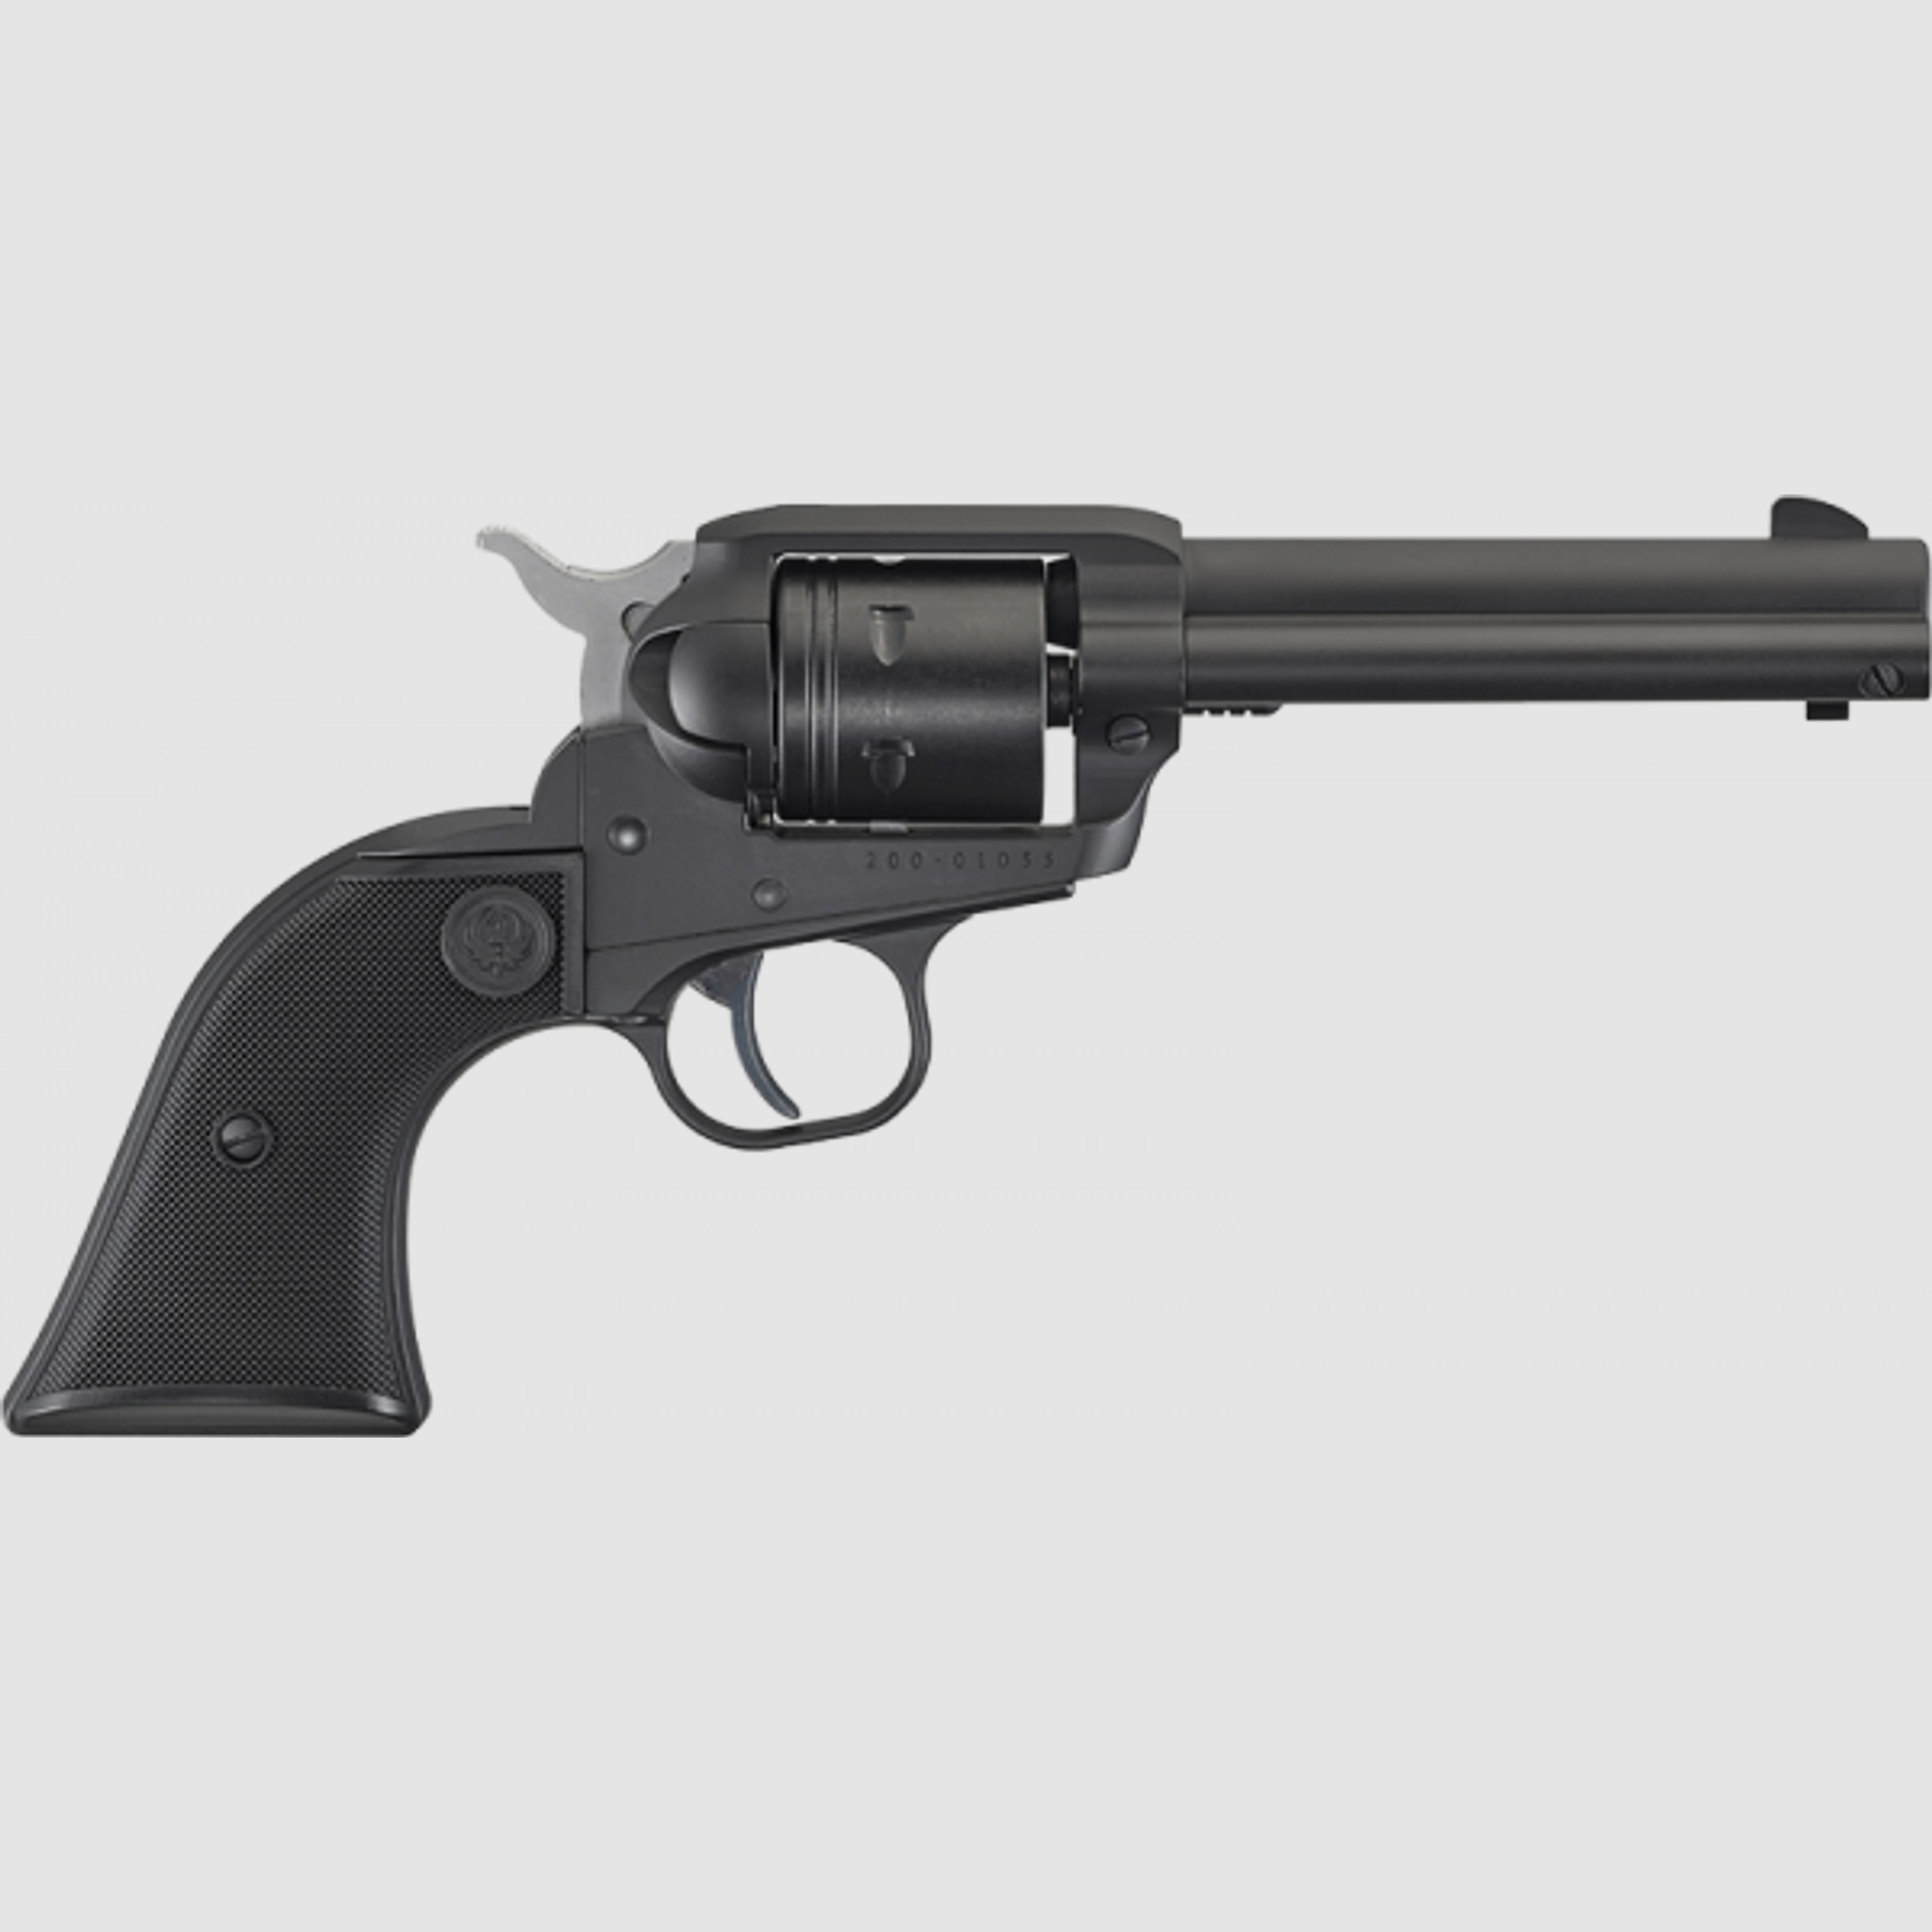 Ruger Wrangler Revolver